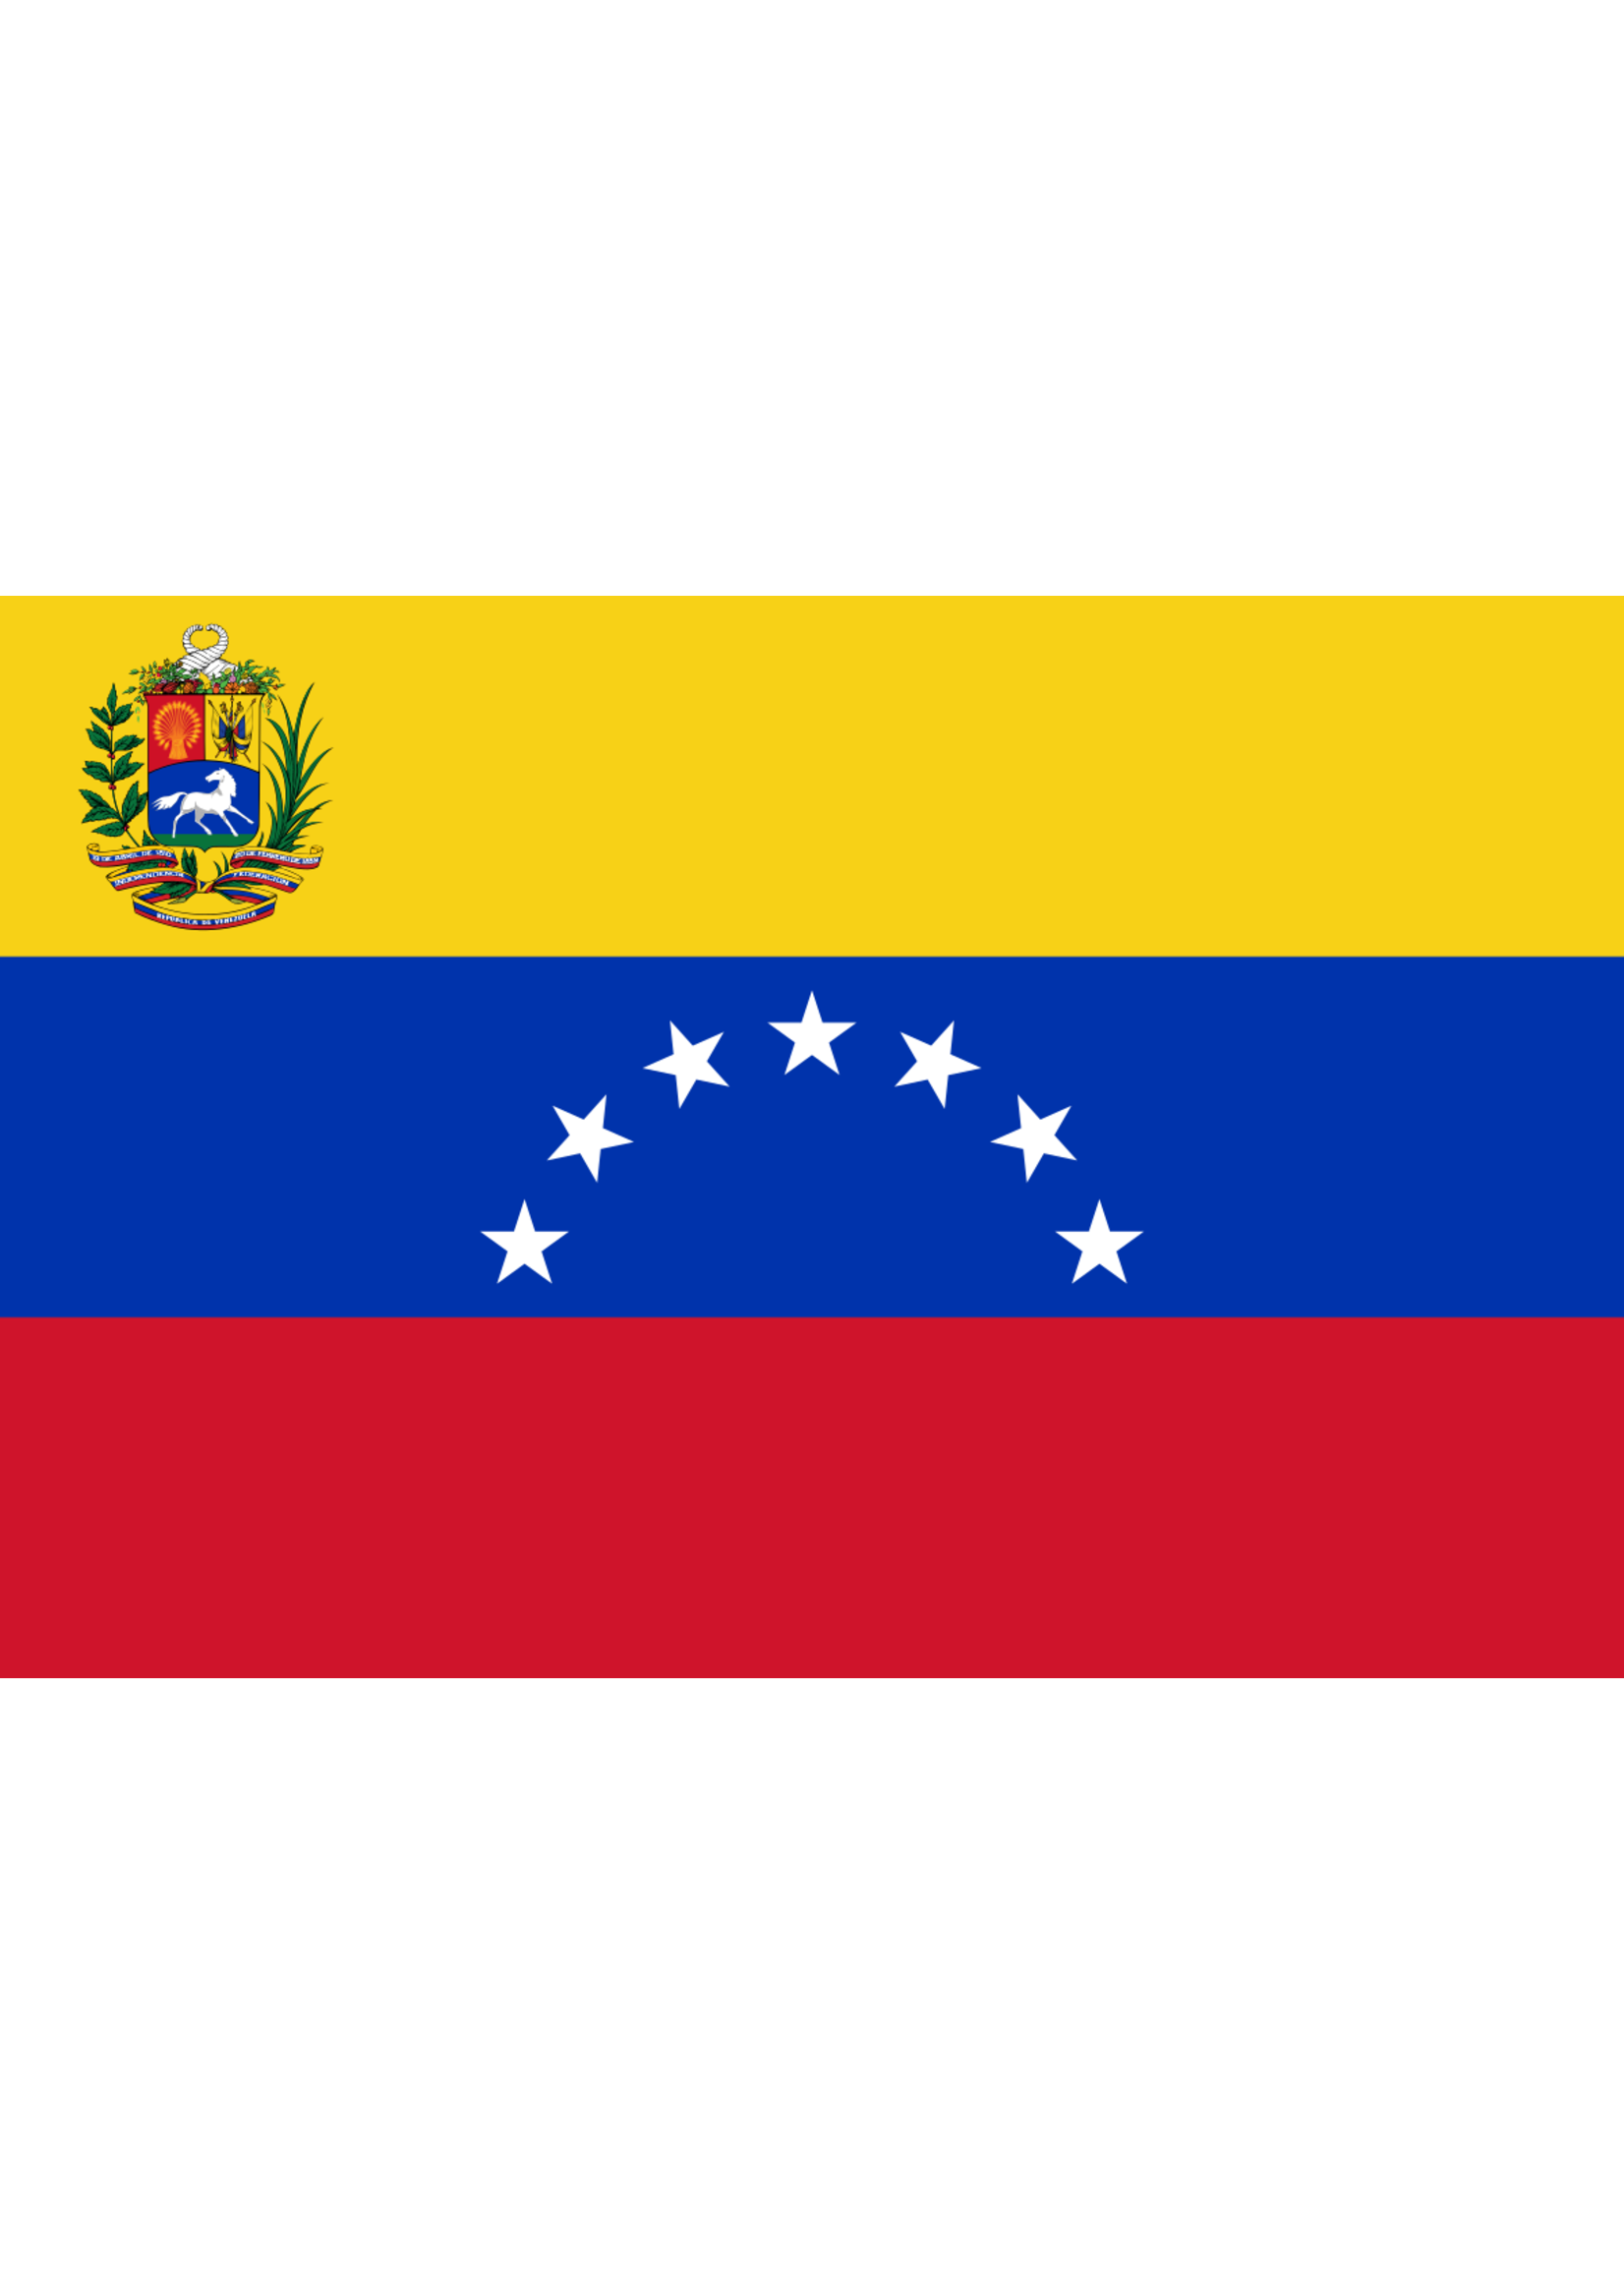 Flag - Venezuela 7 Star W/Crest 1954 - 2006